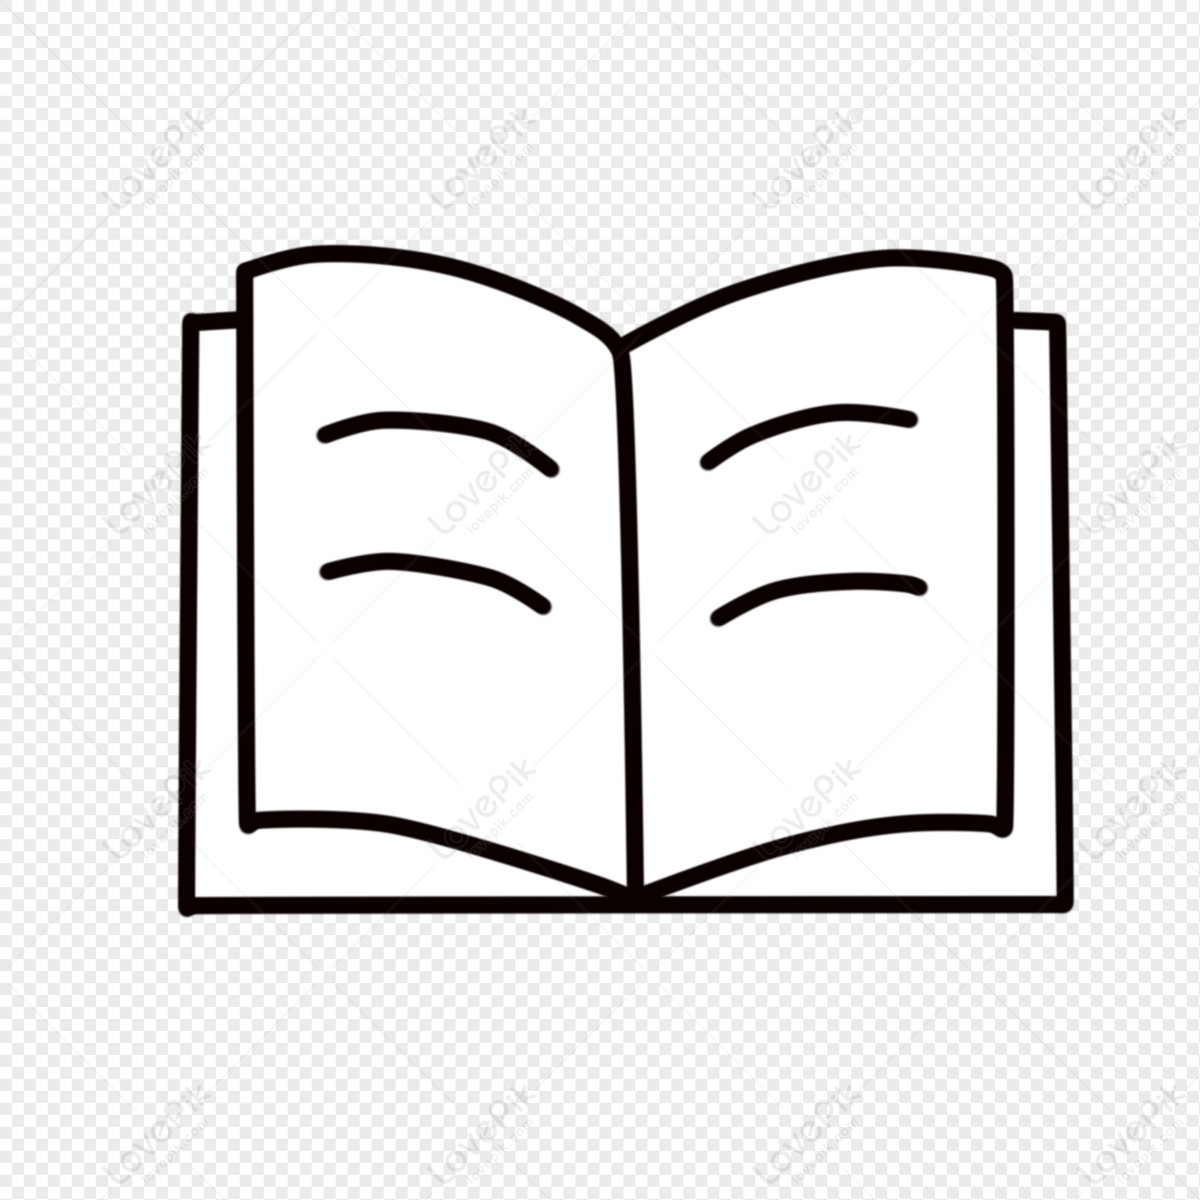 Biểu tượng sách vẽ tối giản: Bạn đang tìm kiếm biểu tượng sách vẽ để phục vụ cho mục đích trang trí hay thiết kế? Bạn đến đúng nơi rồi! Biểu tượng sách vẽ tối giản được thiết kế đơn giản nhưng vẫn đẹp mắt và sẽ là lựa chọn tuyệt vời cho không gian của bạn.